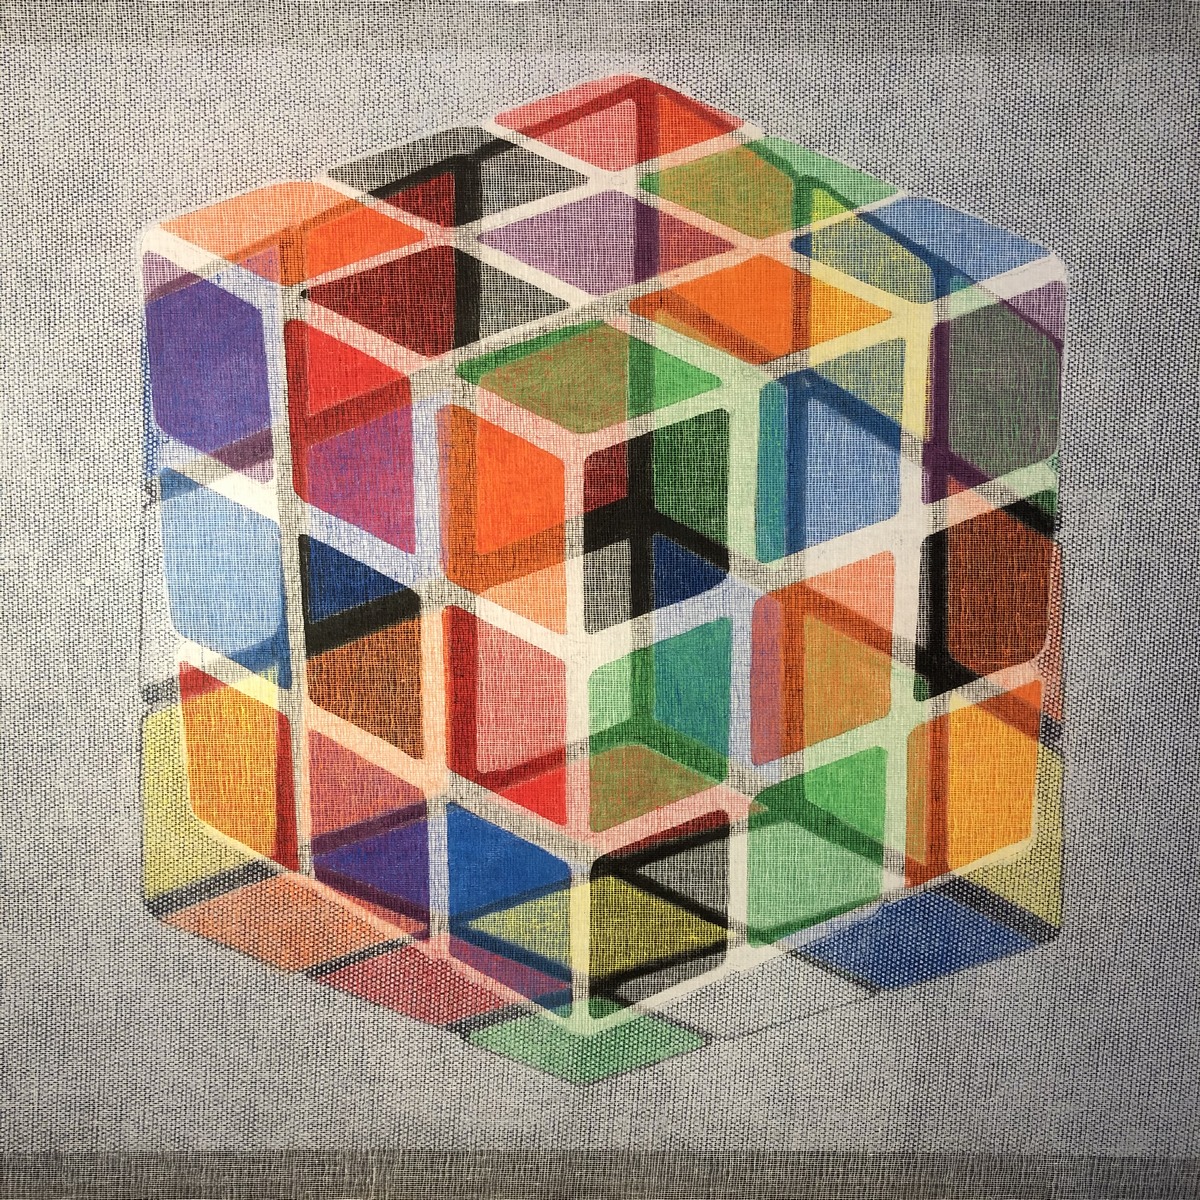 Rubik's cube I